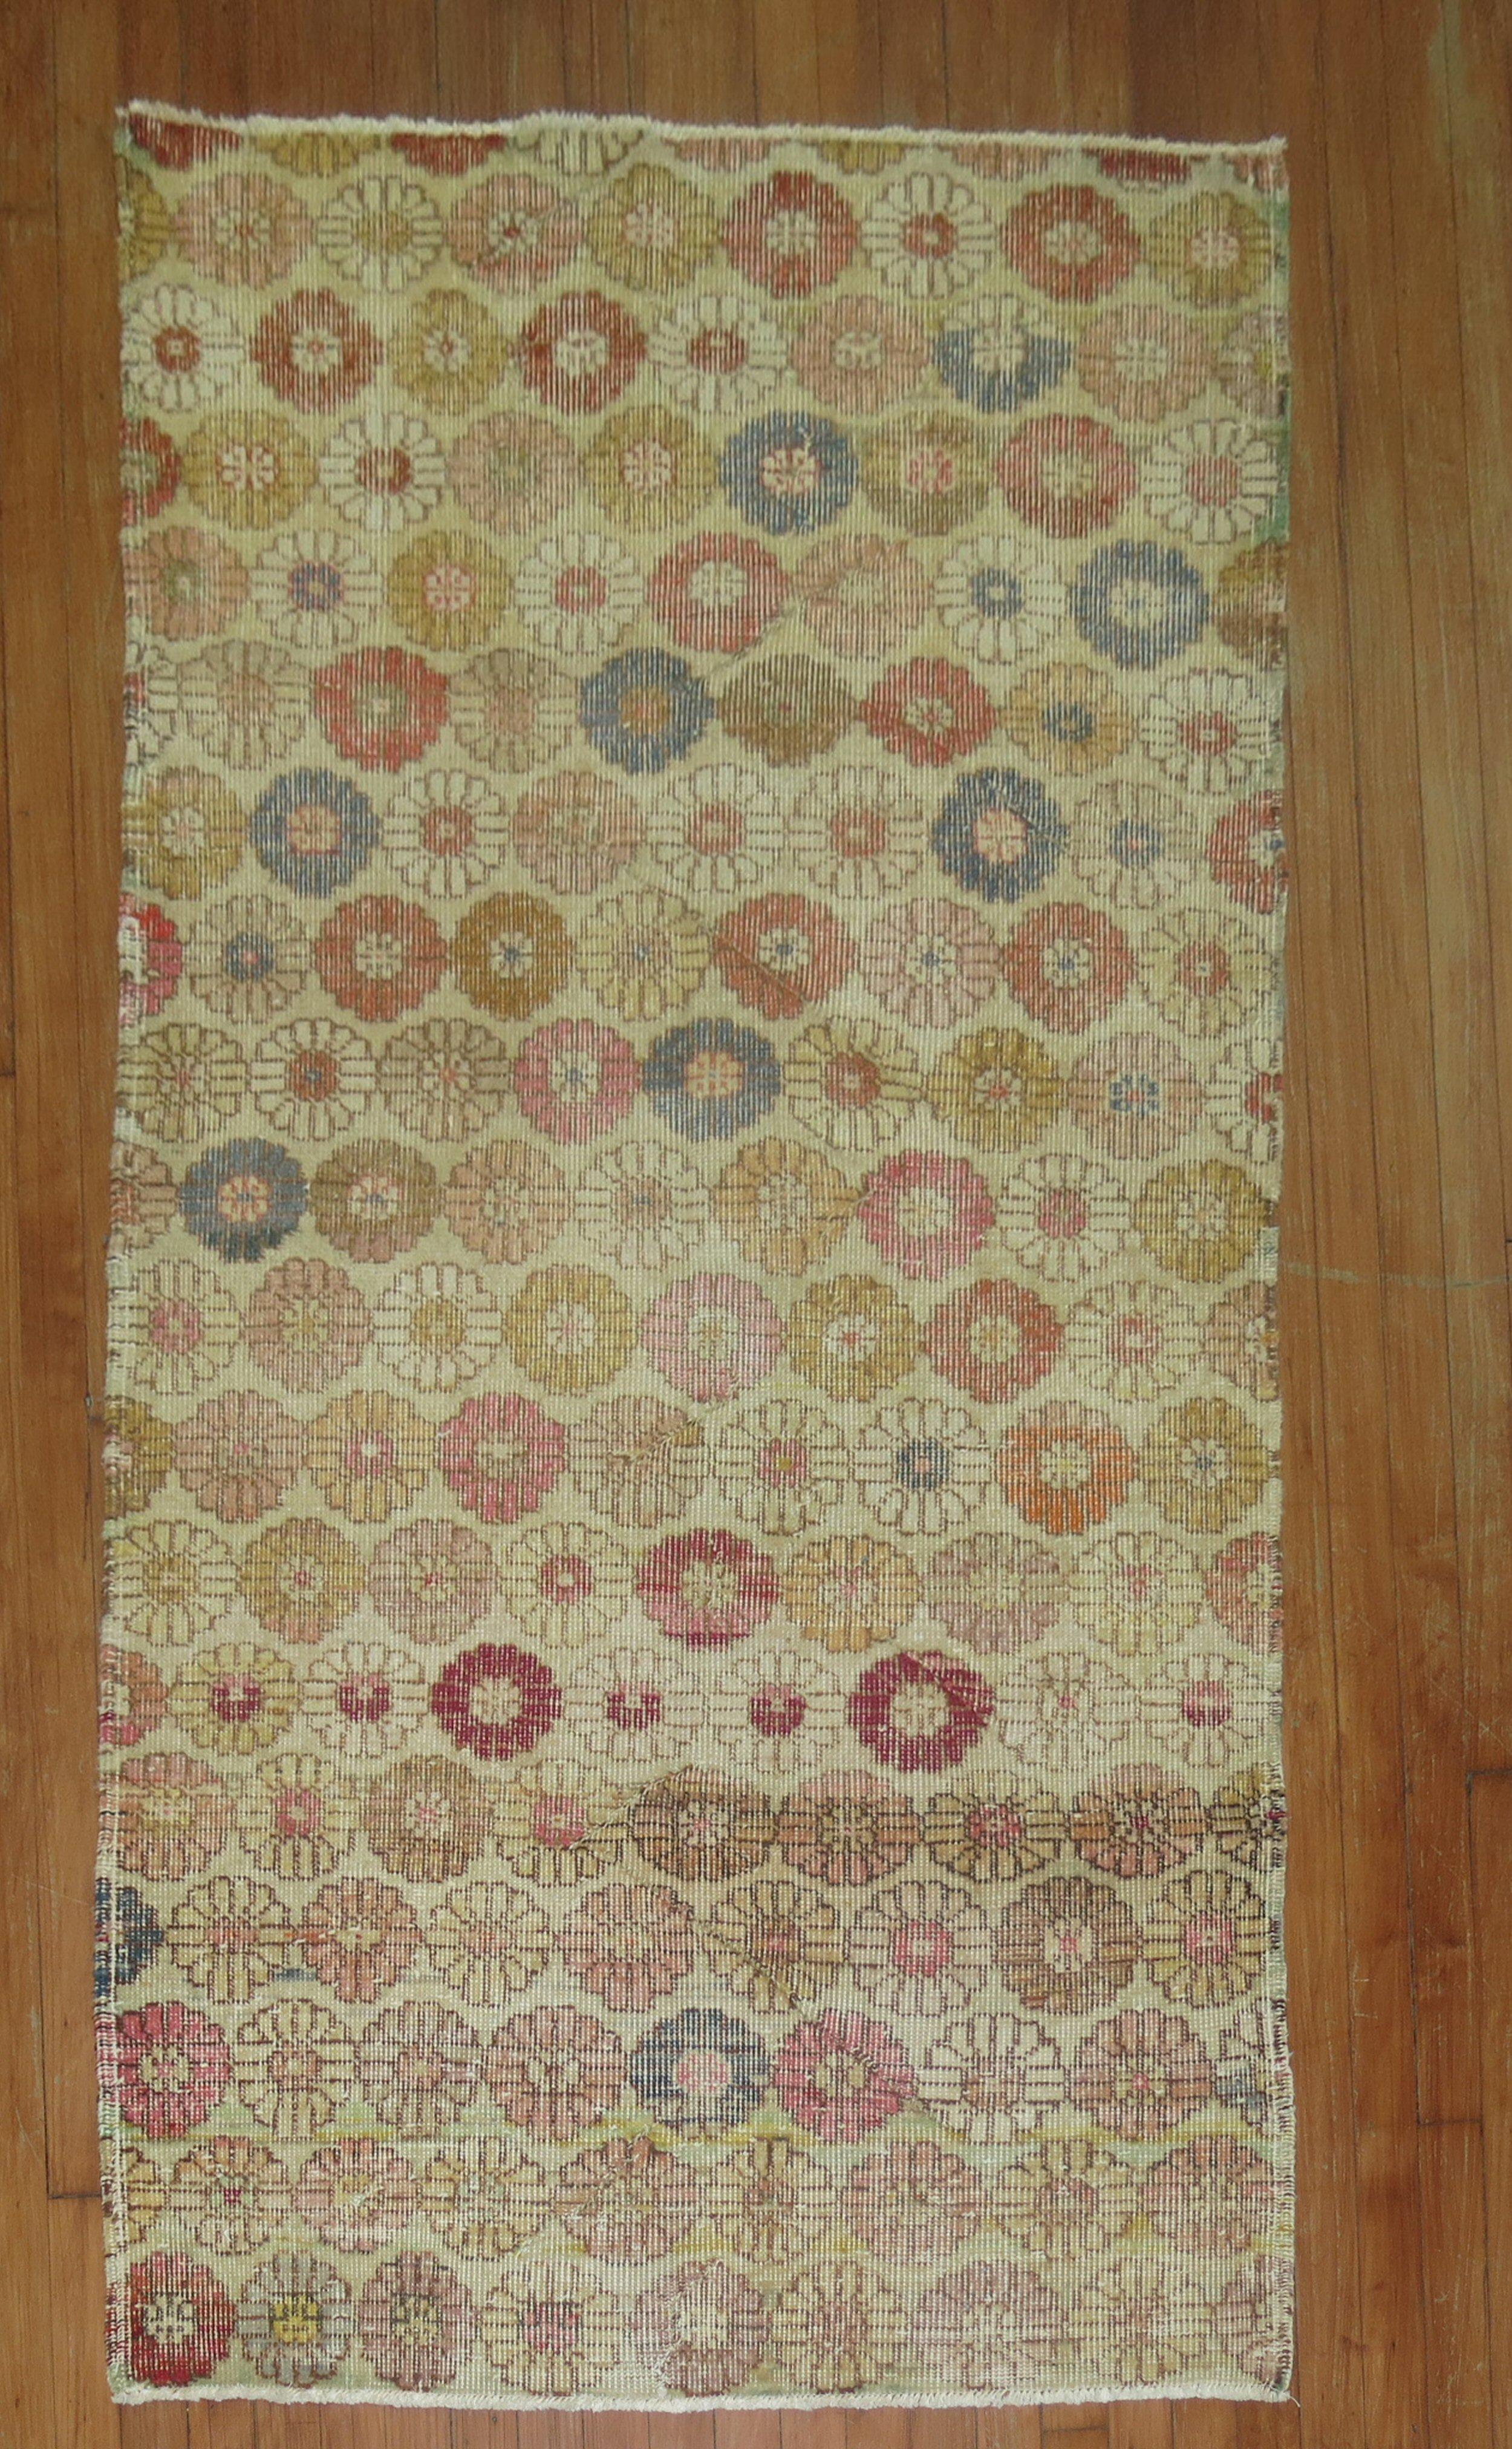 A worn circa mid-20th century rustic color Turkish Deco rug

Measures: 3'6'' x 6'1”.